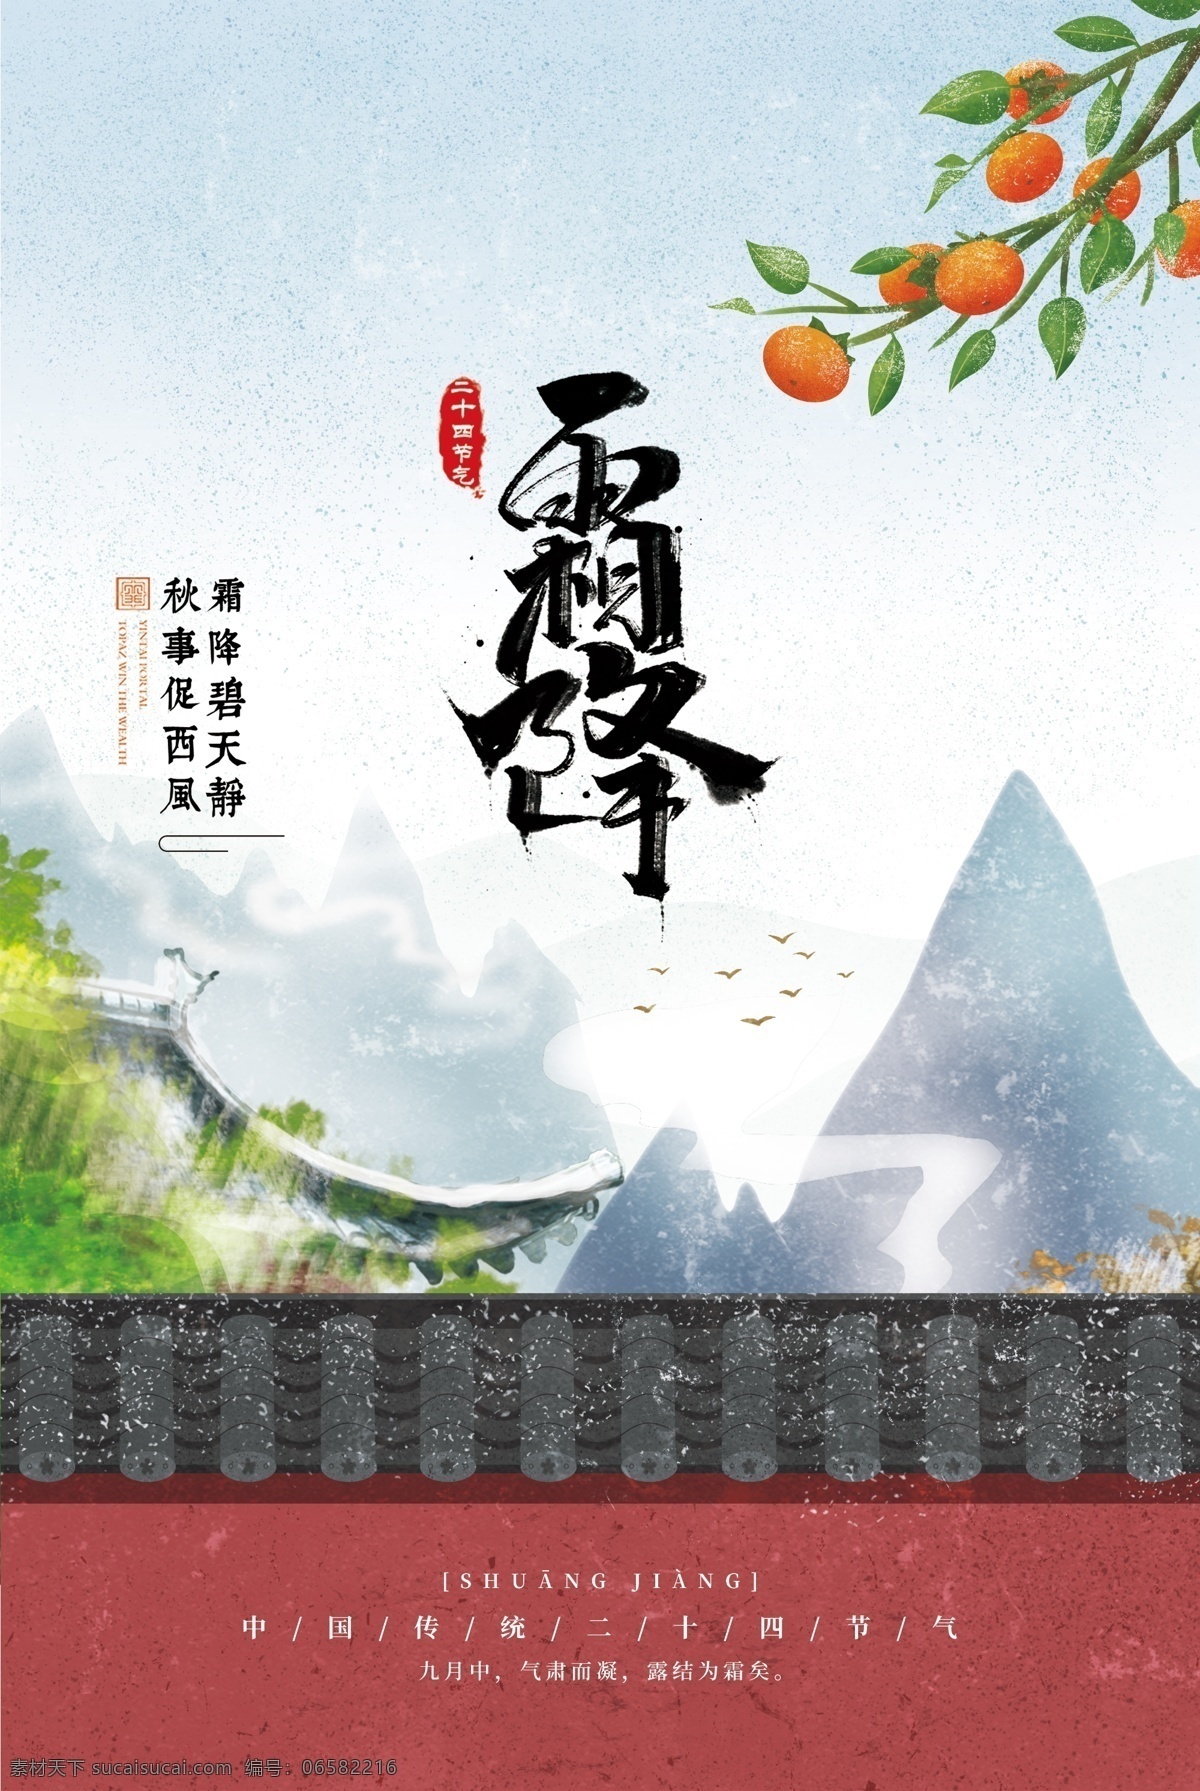 霜降图片 霜降 二十四节气 柿子 山 红 文化艺术 传统文化